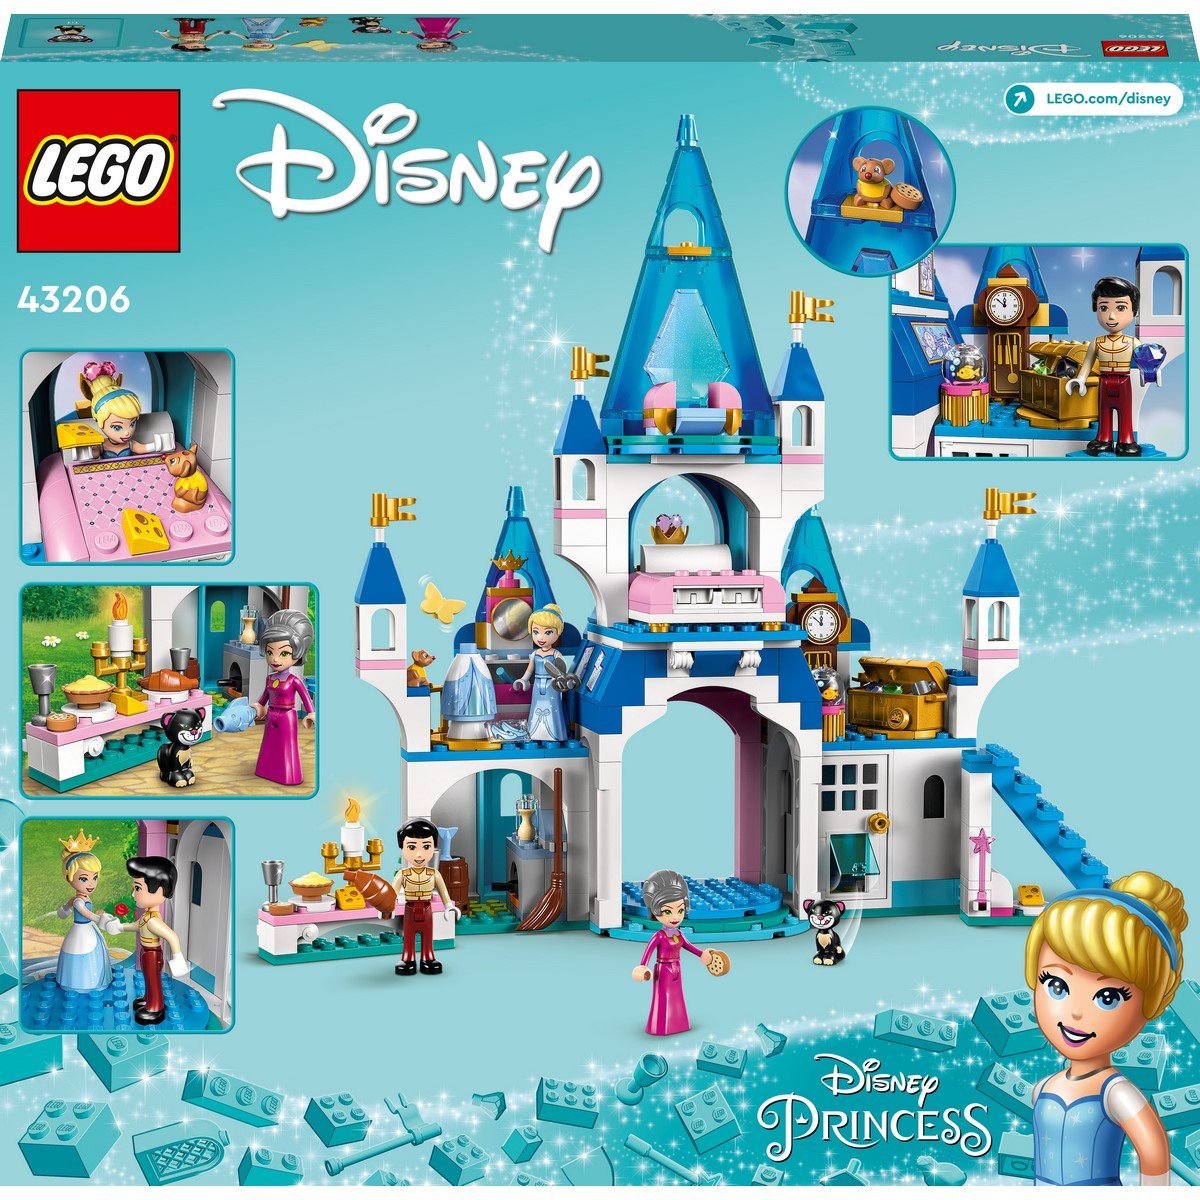 Lego Lego ® disney princesstm - la célébration au château de cendrillon,  jouet fille et garçon 4 ans et plus, 168 pièces - 43178